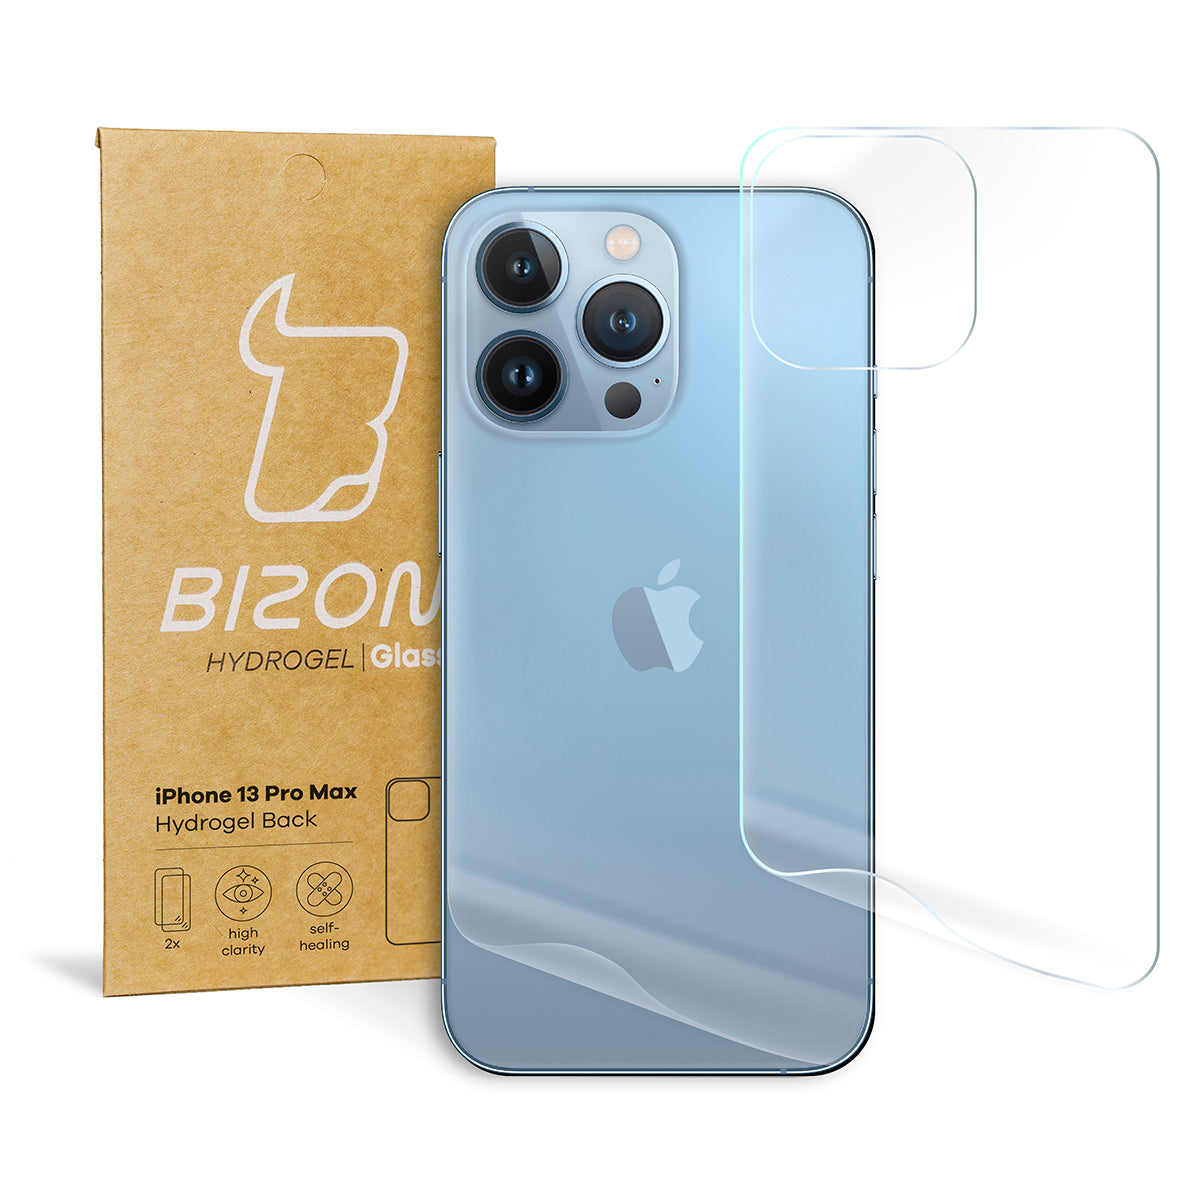 Hydrogel Folie für die Rückseite Bizon Glass, iPhone 13 Pro Max, 2 Stück